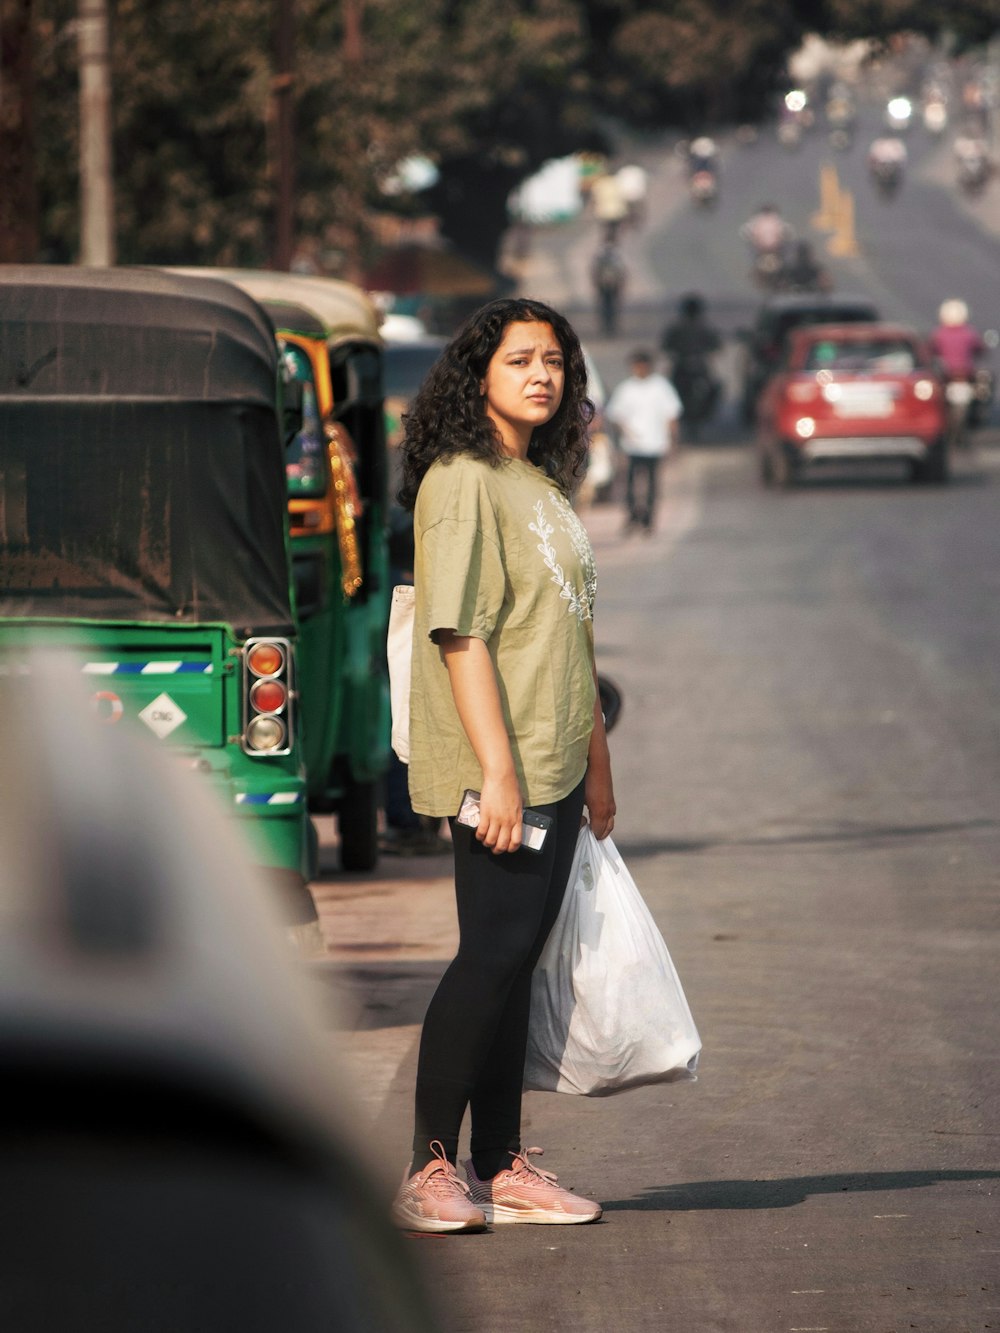 Eine Frau, die am Straßenrand steht und eine Tasche hält